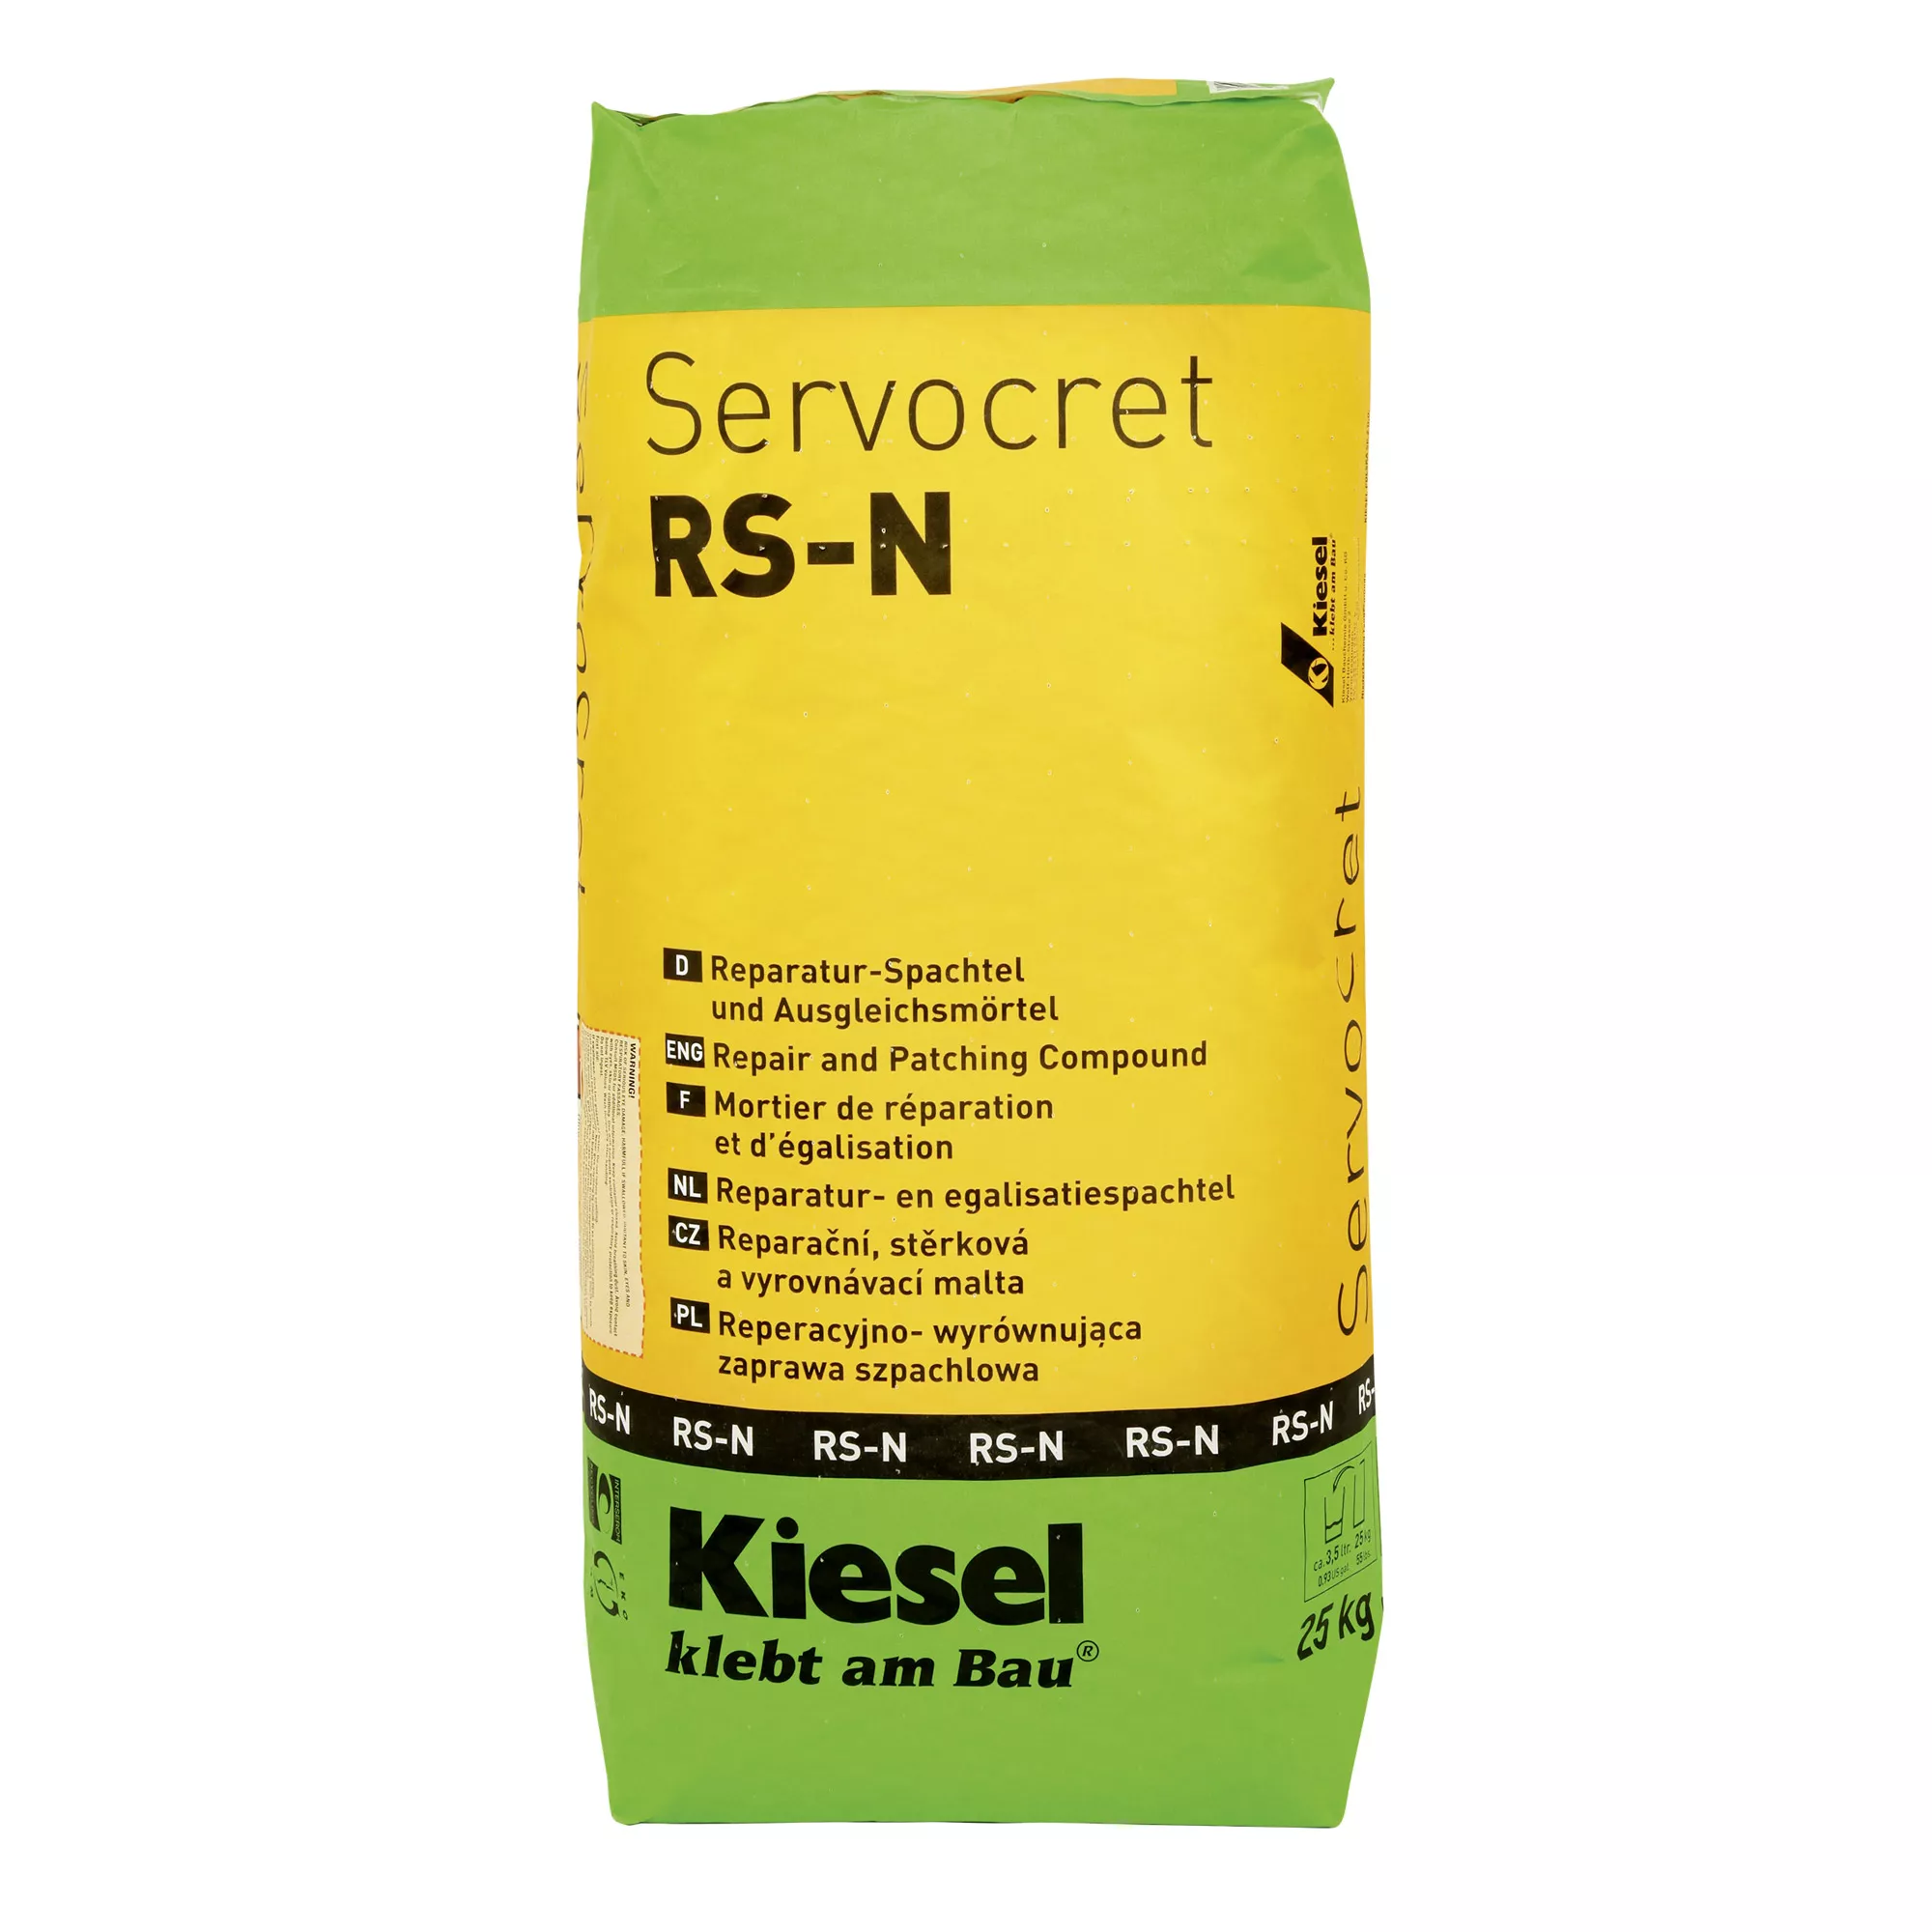 Kiesel Servocret RS-N - korjauslastalla ja tasoituslaastilla (25KG)